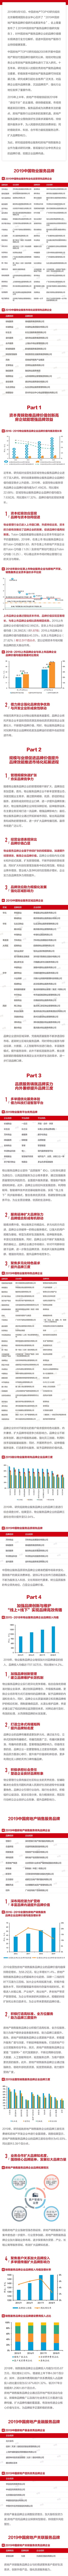 2019中国房地产服务品牌排行榜